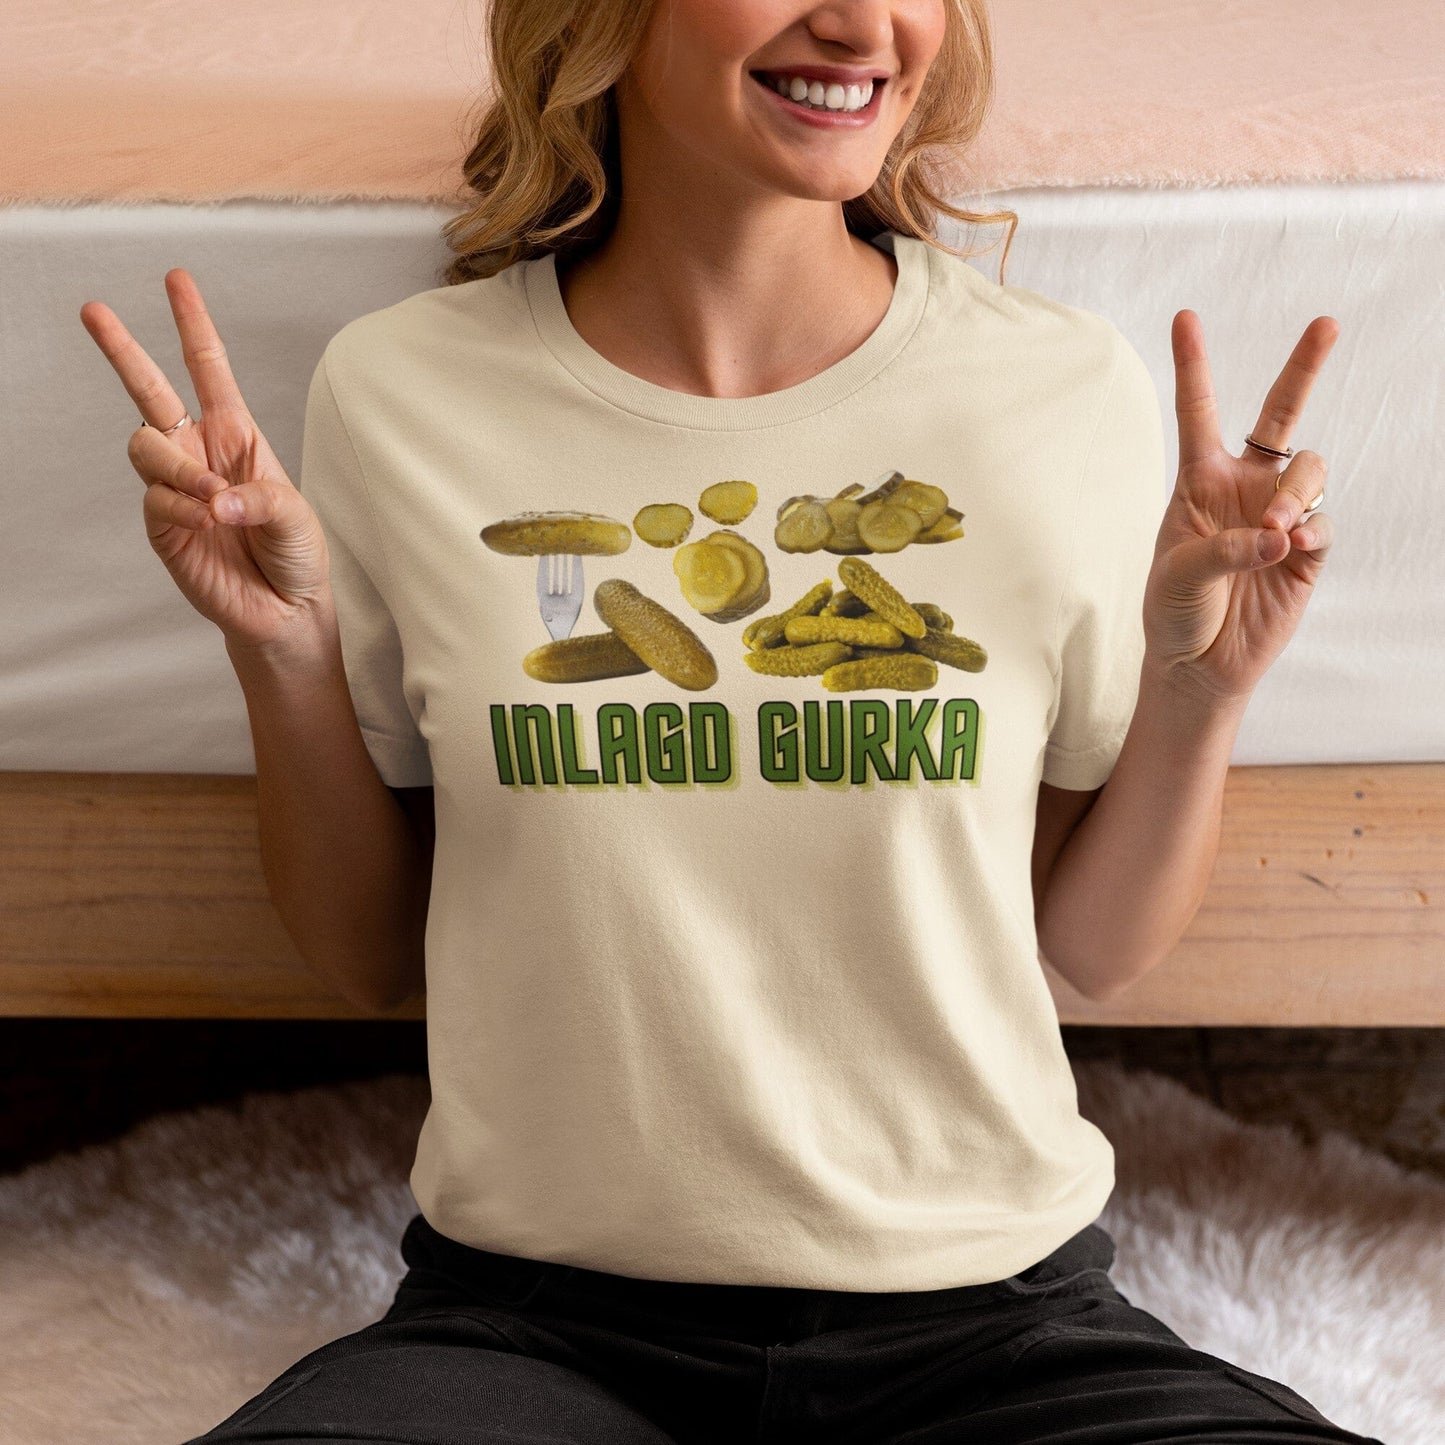 Inlagd Gurka - T-shirt 